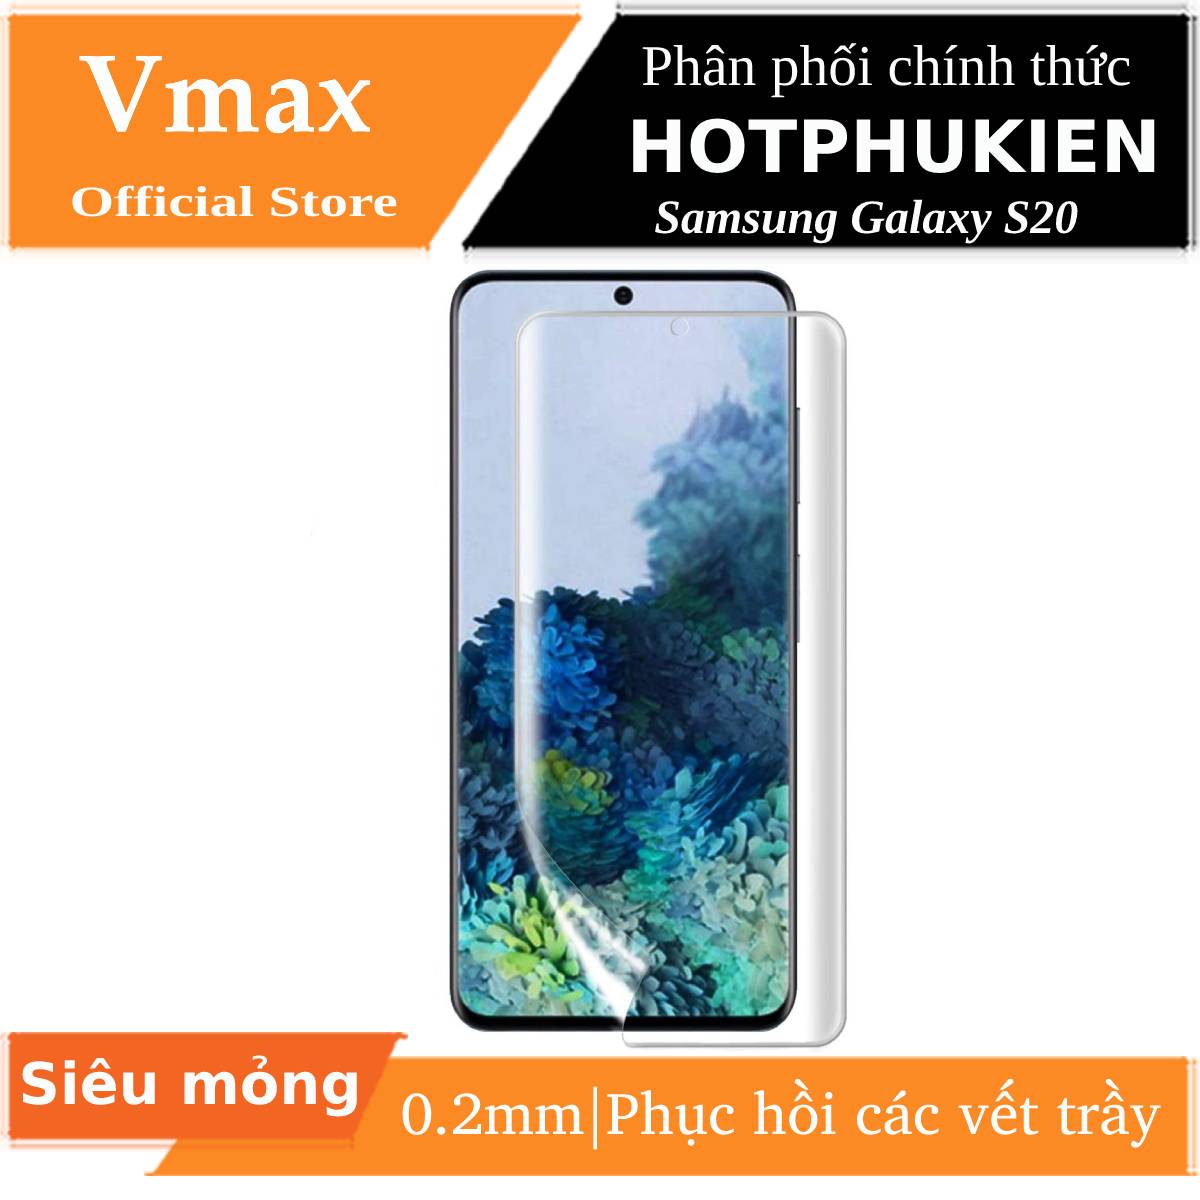 Miếng dán dẻo PPF chống trầy màn hình cho Samsung Galaxy S20 hiệu Vmax